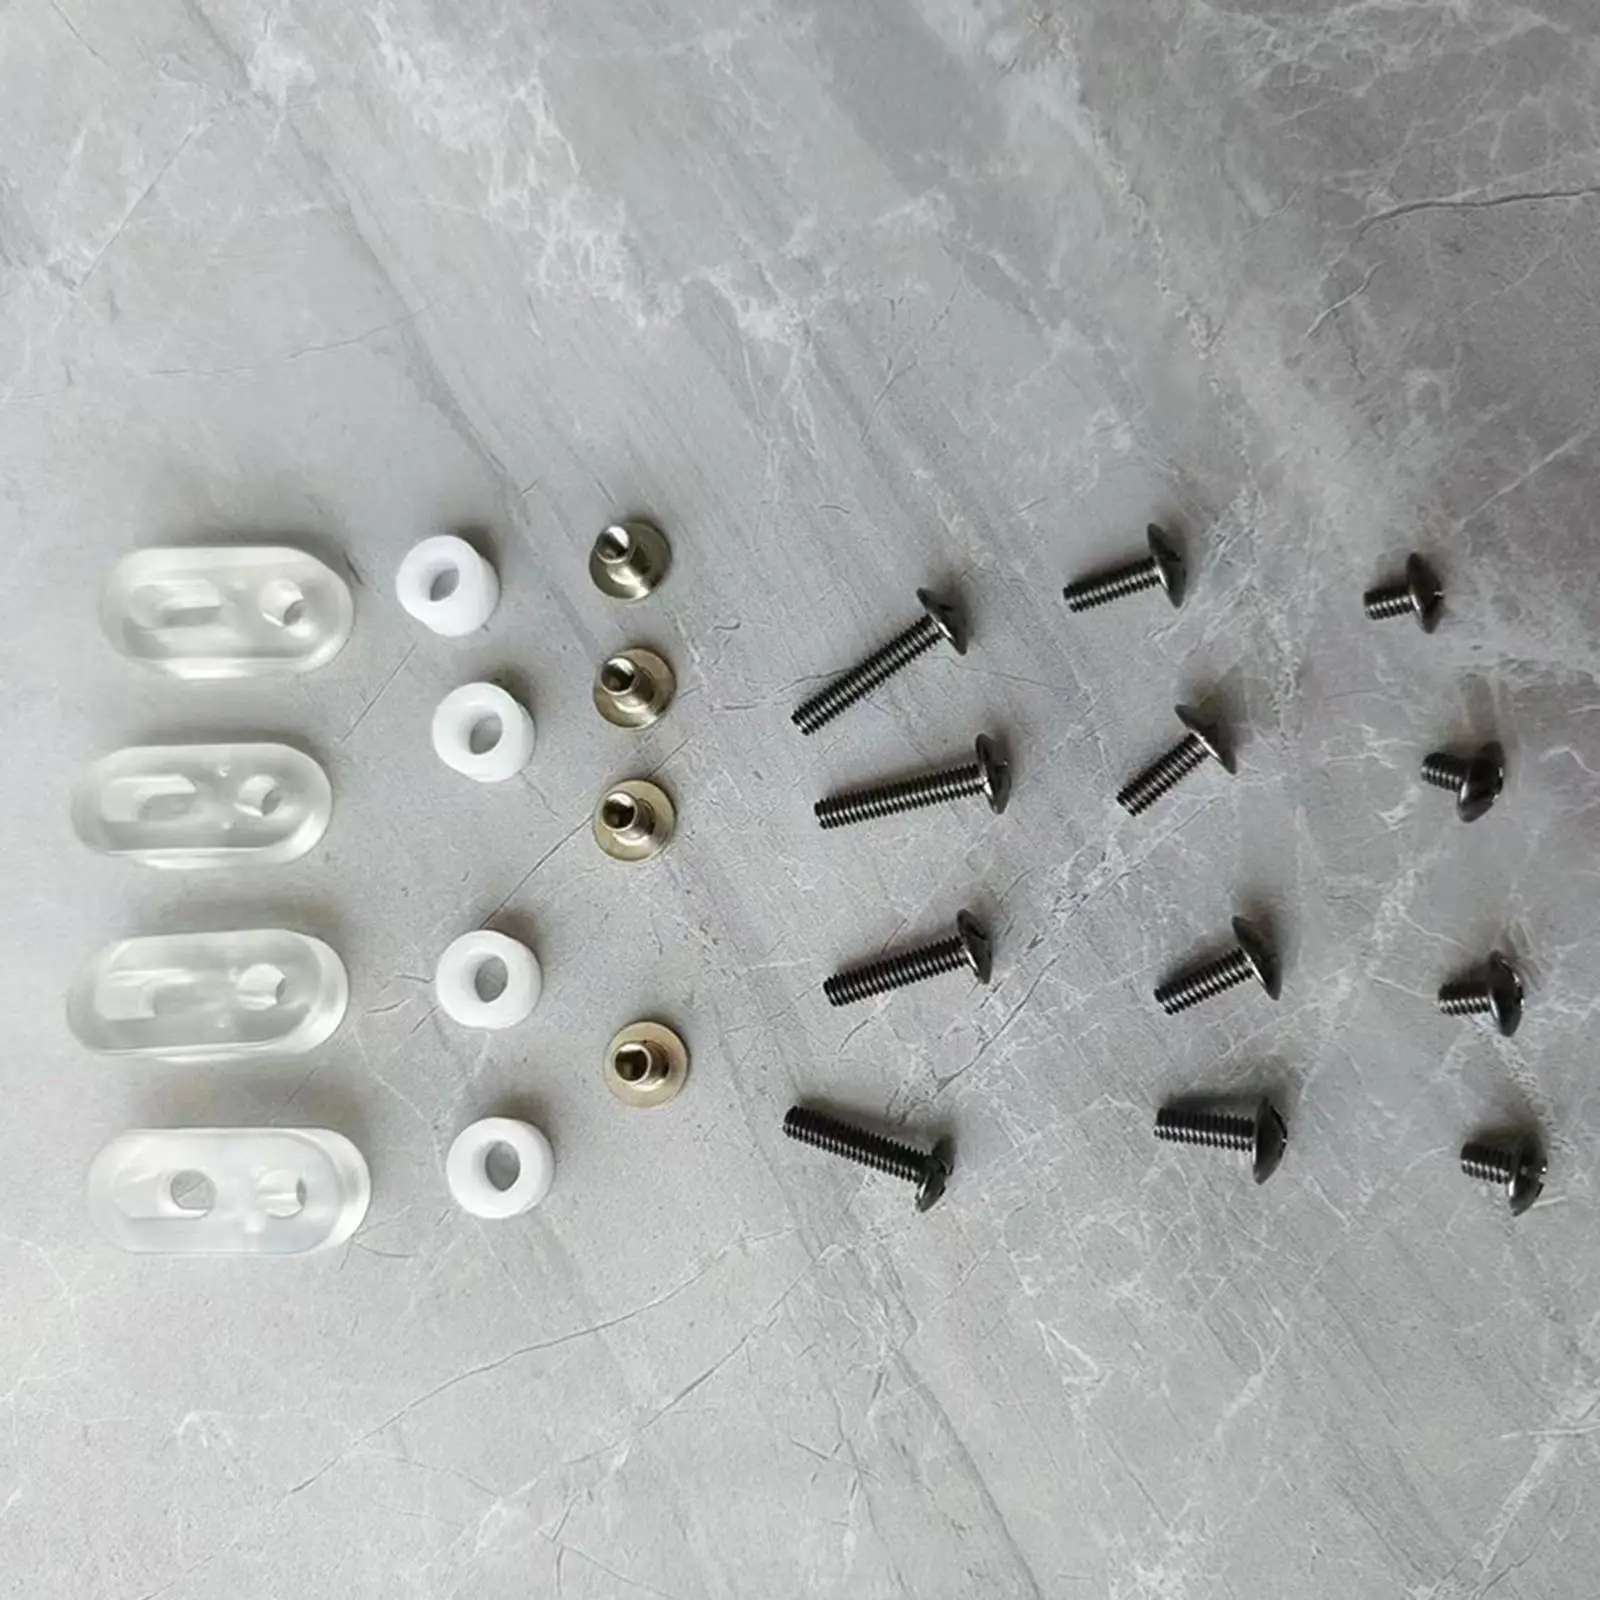 Ice Hockey Visor Hardware Kit Screw Washers Nuts Helmet Screws Safety Ice Hockey Visor Kit Fixings Accessories Back up Hardwares